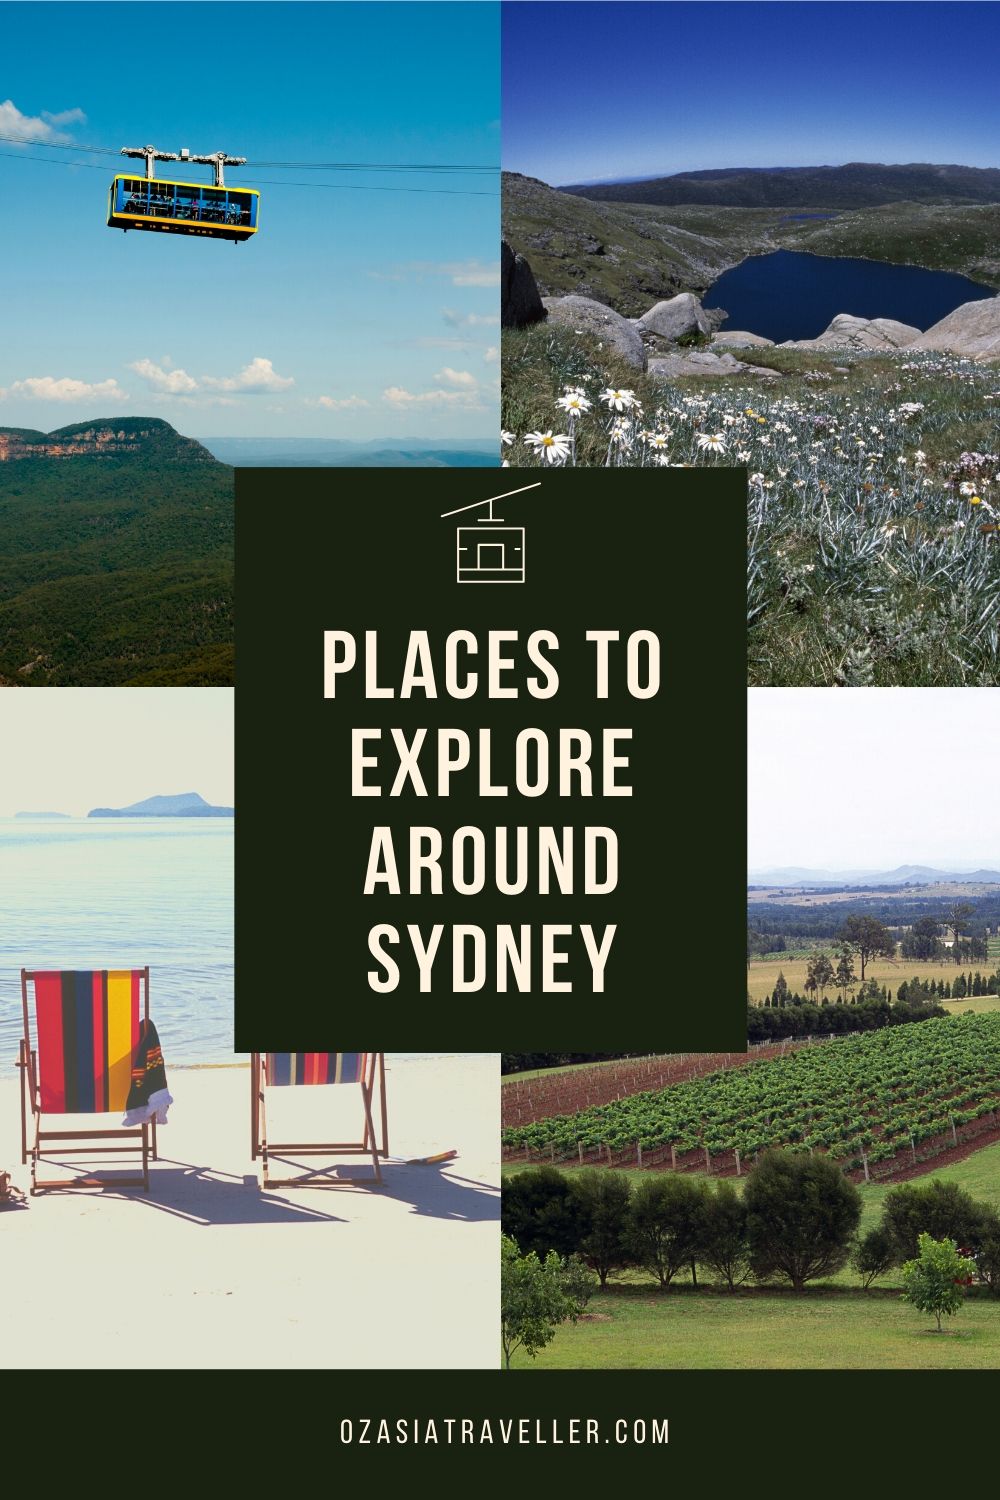 Places to explore around Sydney